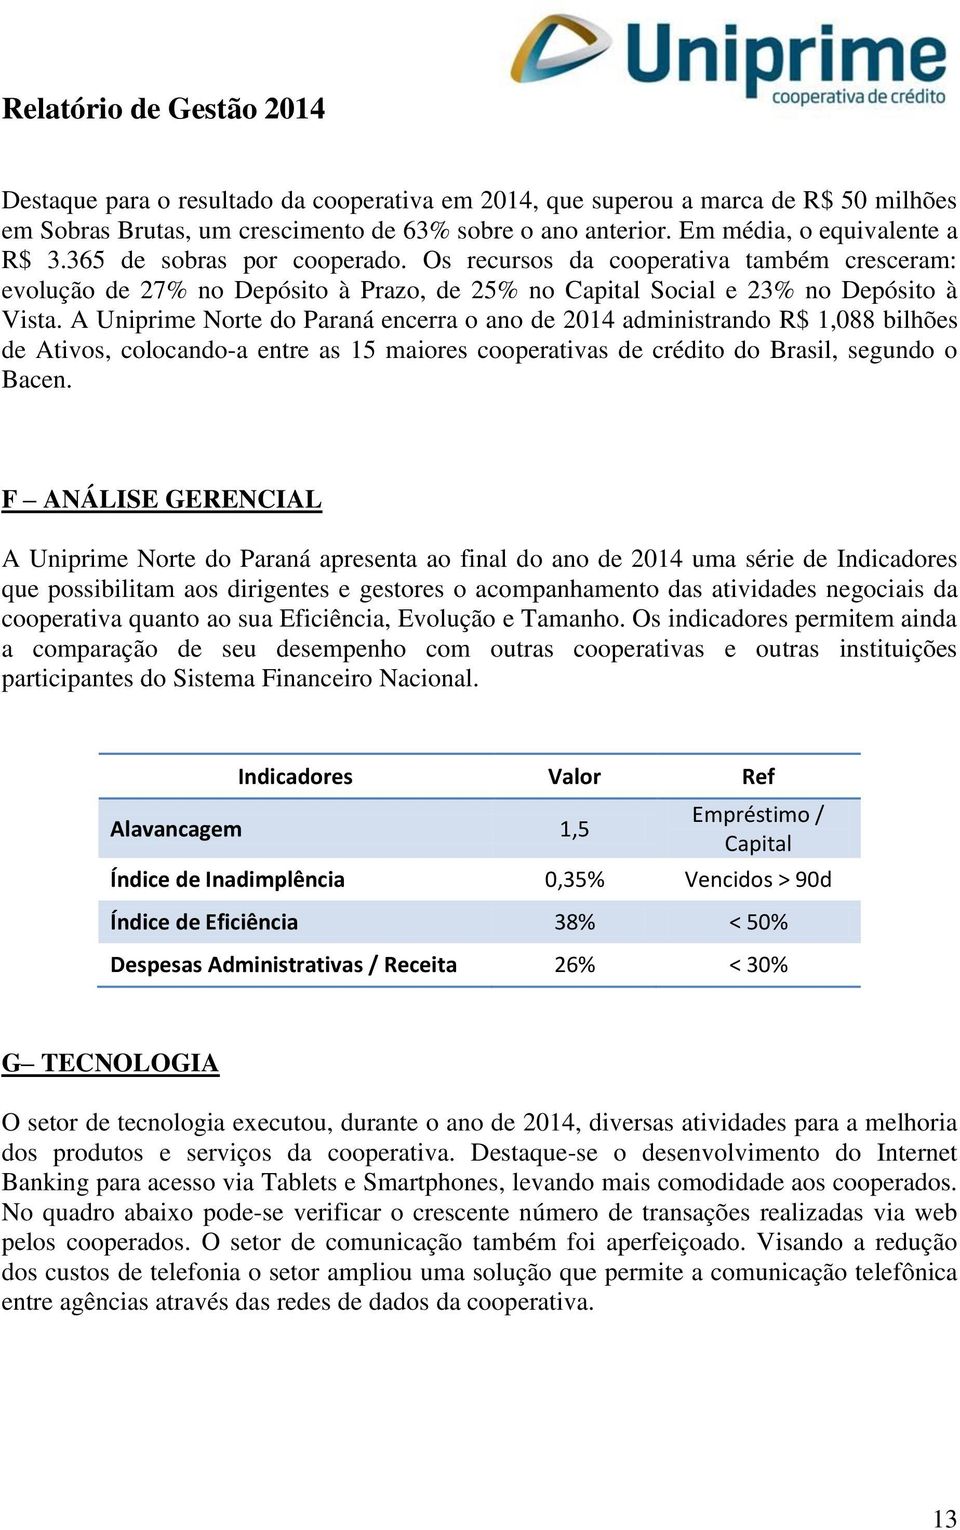 A Uniprime Norte do Paraná encerra o ano de 2014 administrando R$ 1,088 bilhões de Ativos, colocando-a entre as 15 maiores cooperativas de crédito do Brasil, segundo o Bacen.